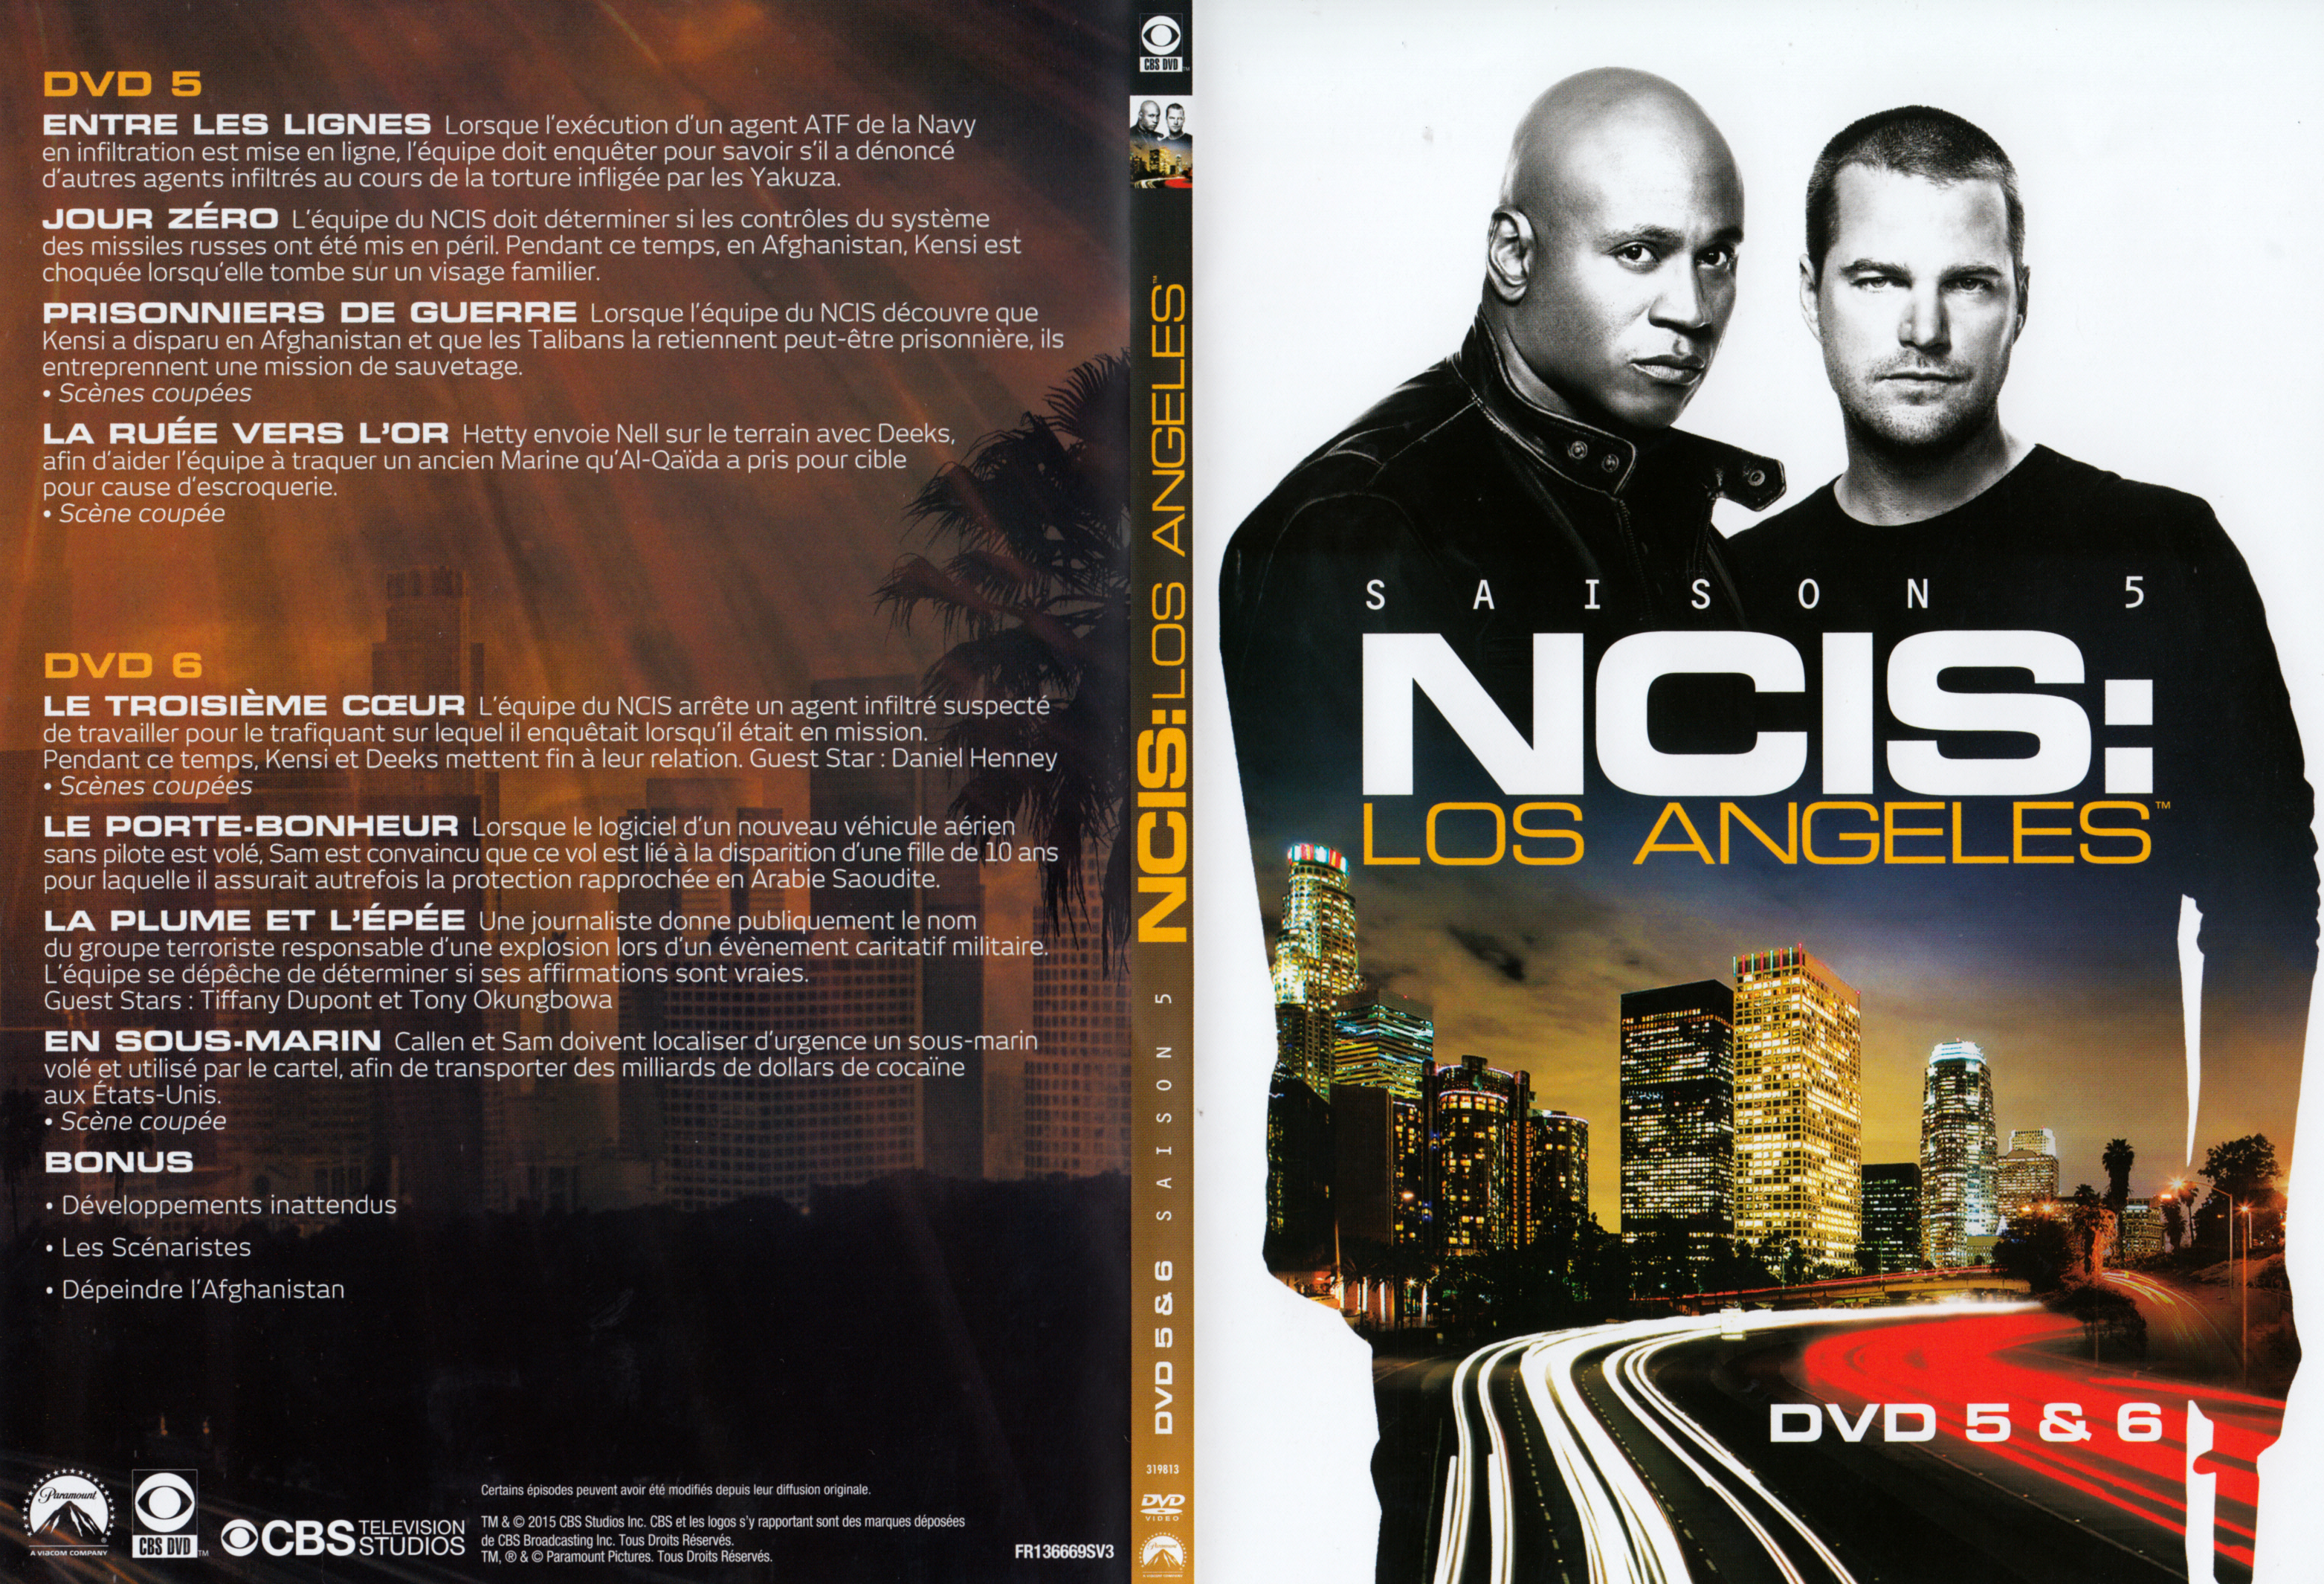 Jaquette DVD NCIS Los Angeles Saison 5 DVD 3